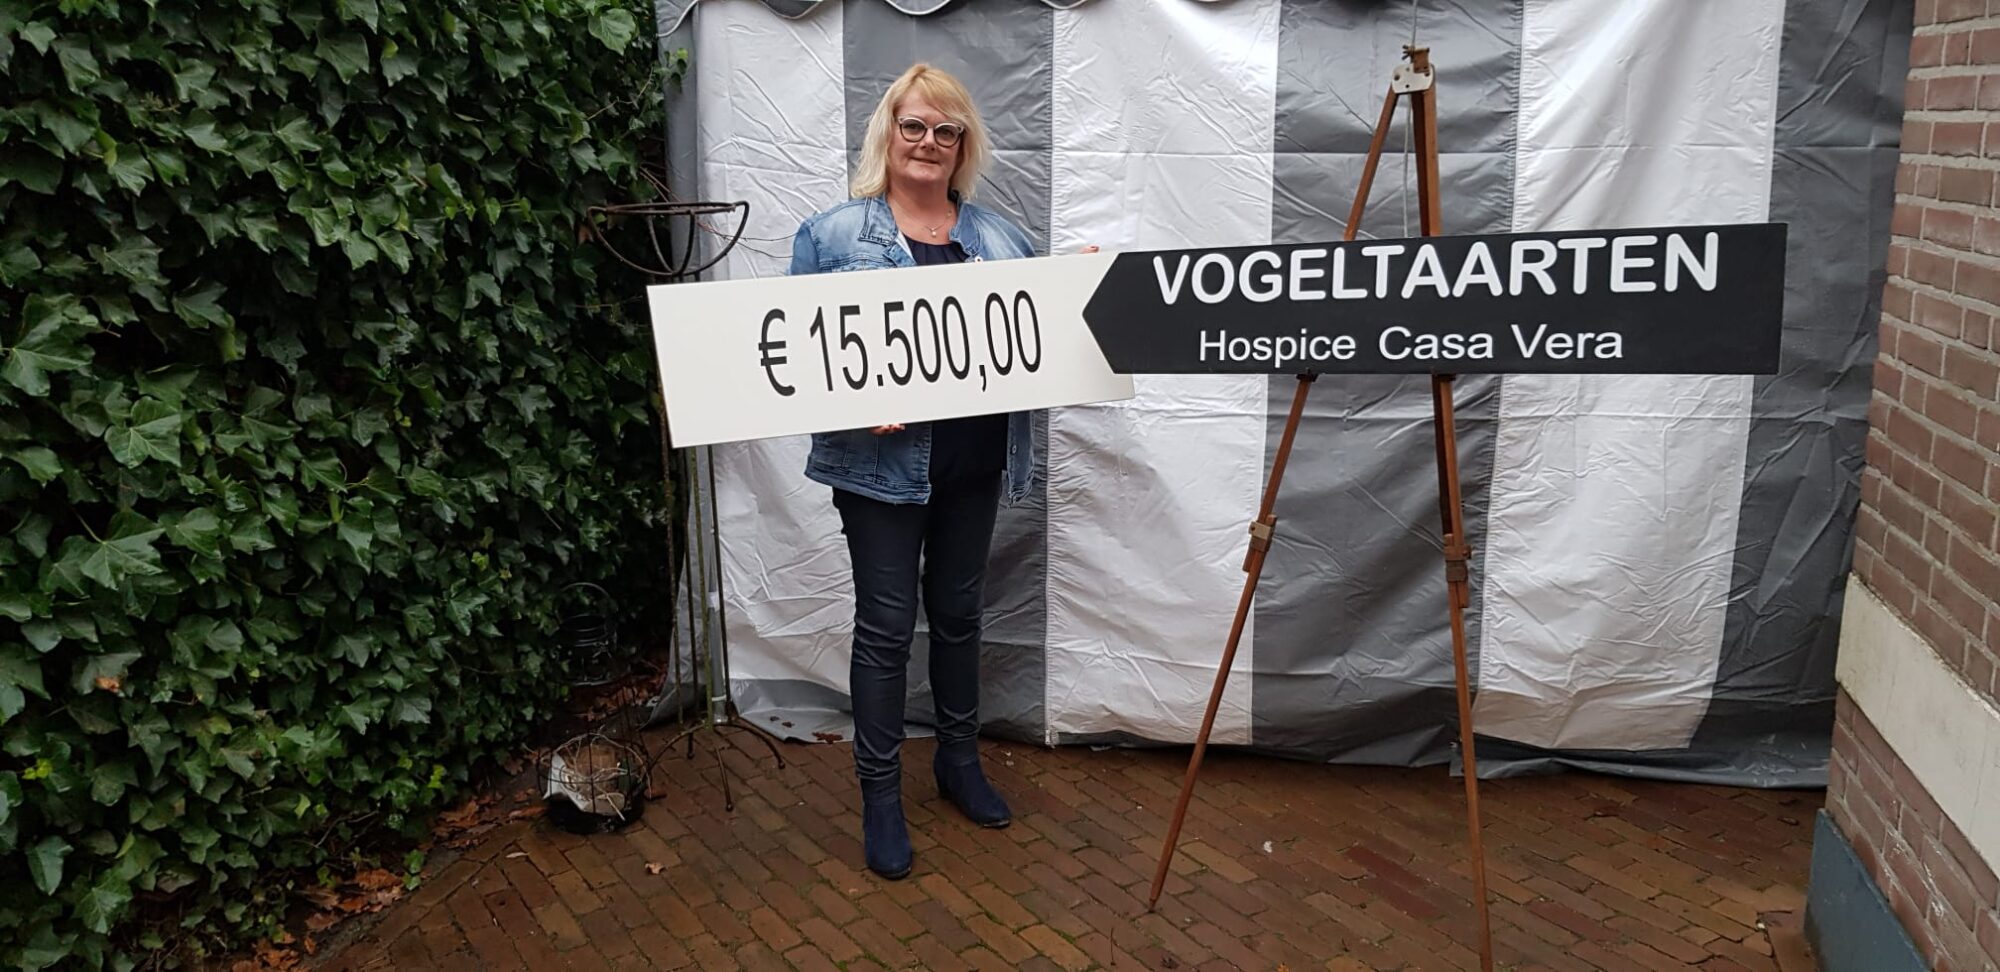 Een record opbrengst voor hospice Casa Vera